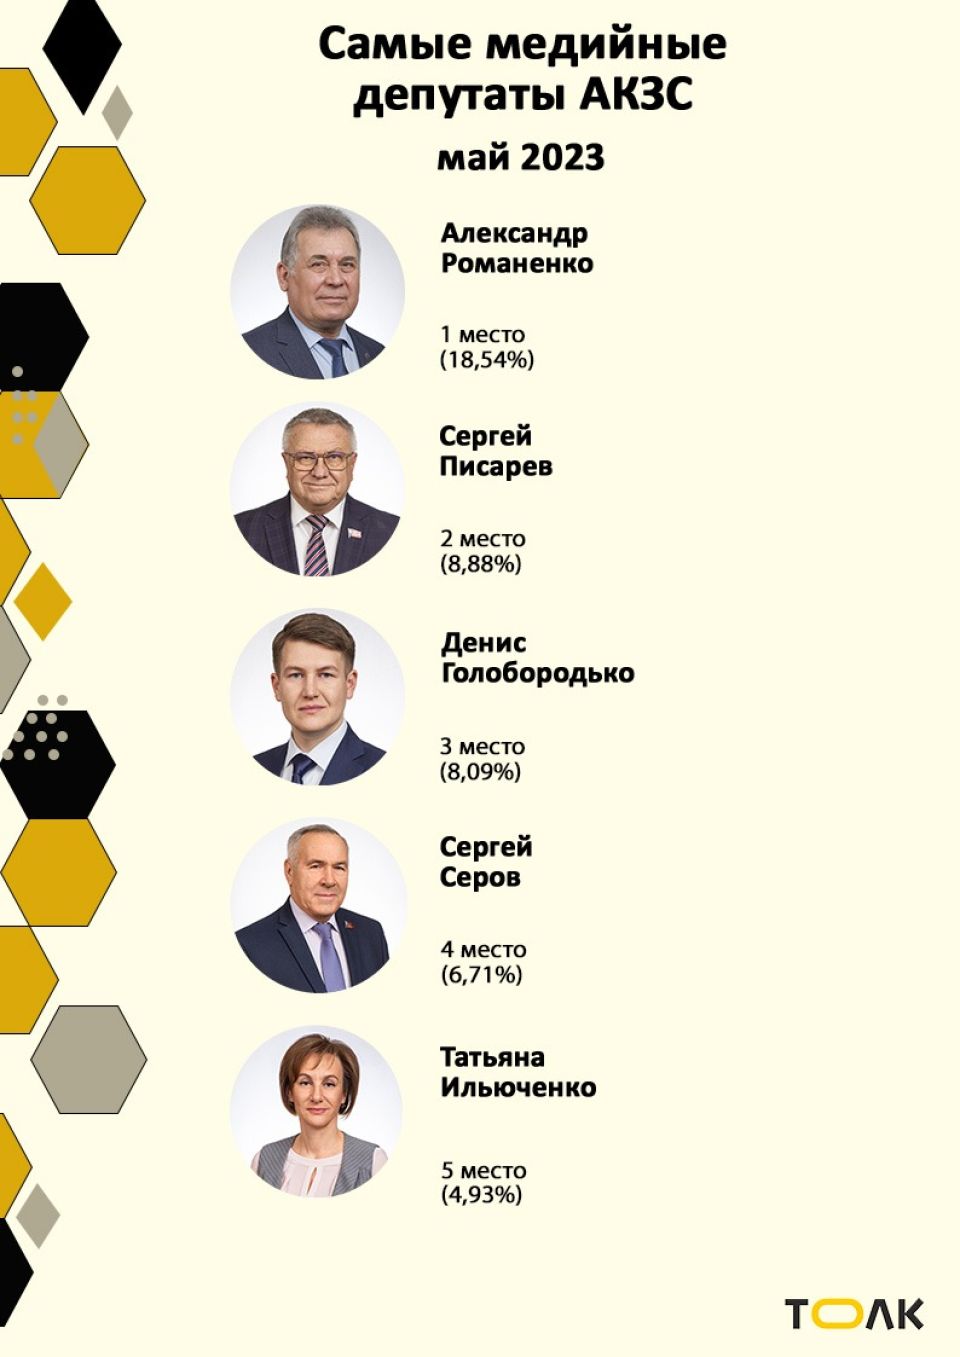 Рейтинг медийности депутатов АКЗС в мае 2023 года